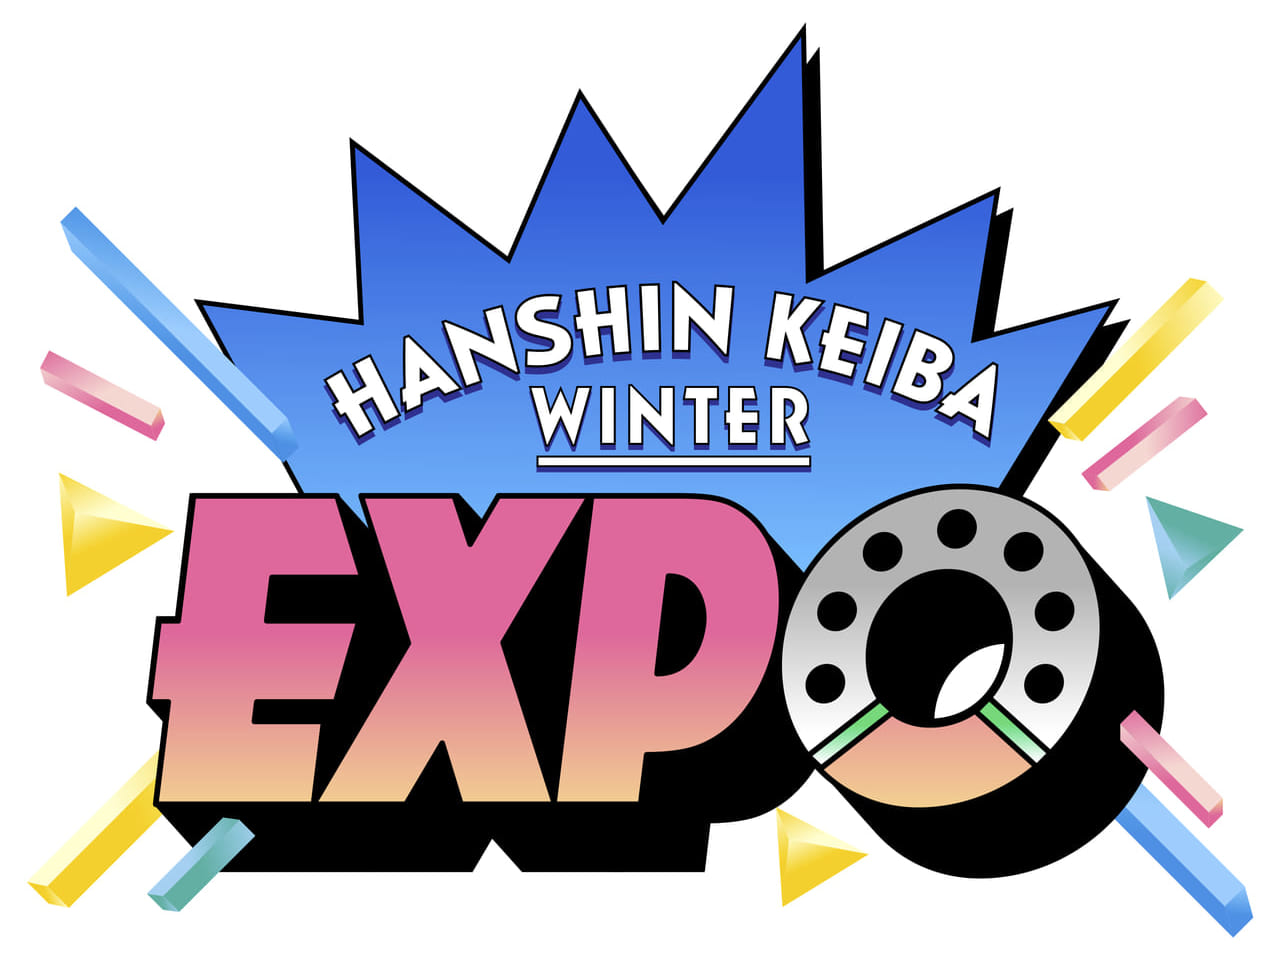 HANSHIN KEIBA WINTER EXPO